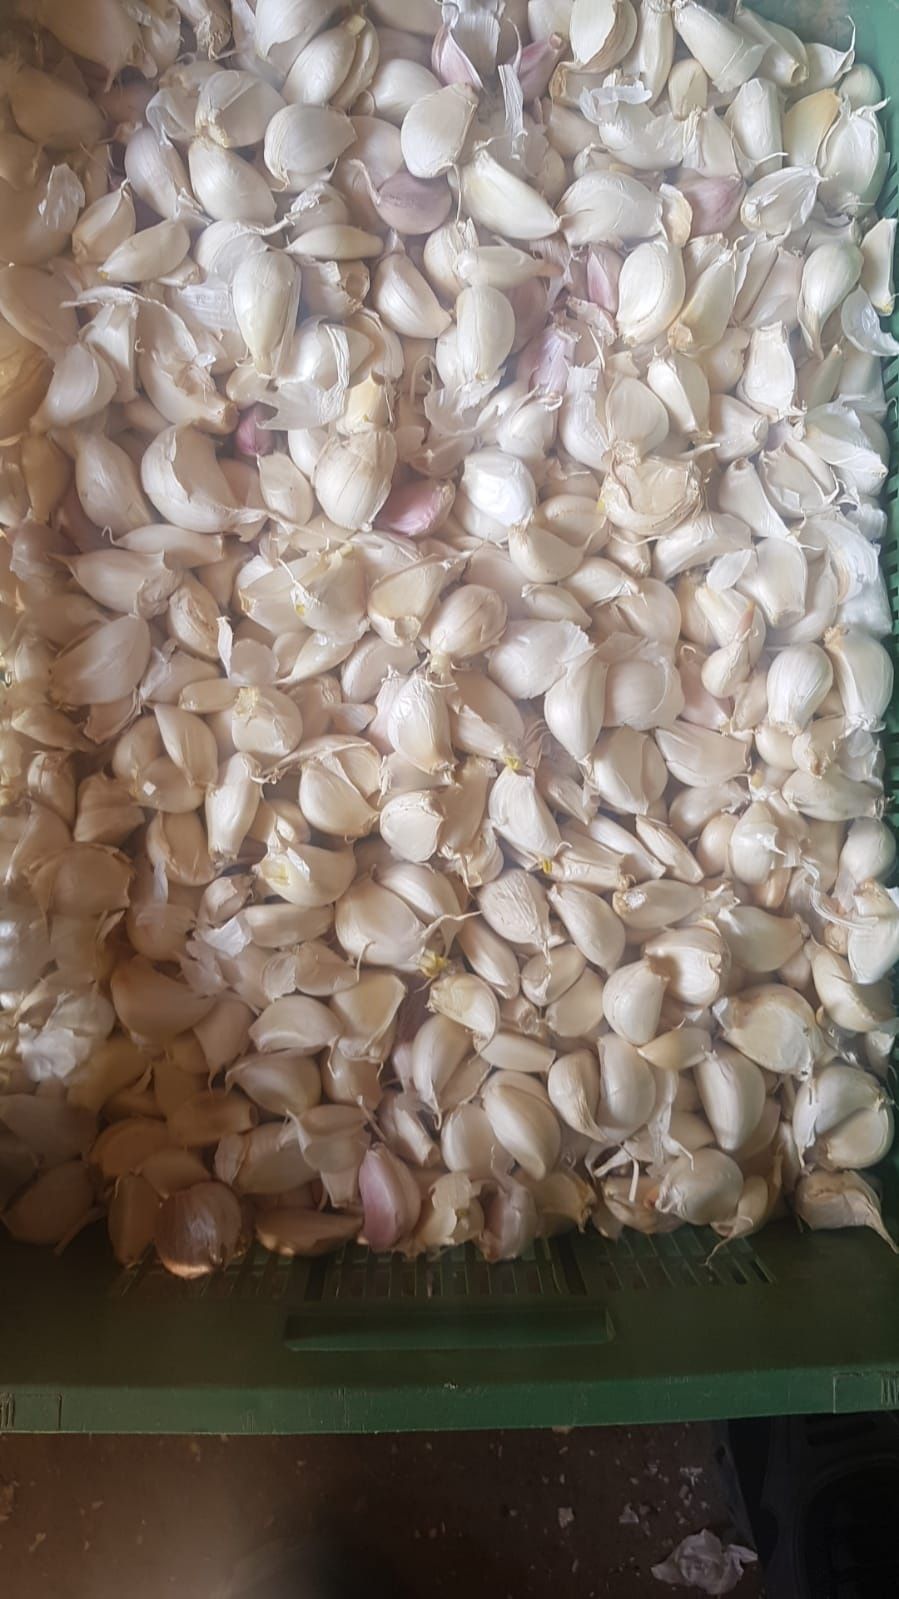 Vand grăunti de usturoi cu germinatie totală